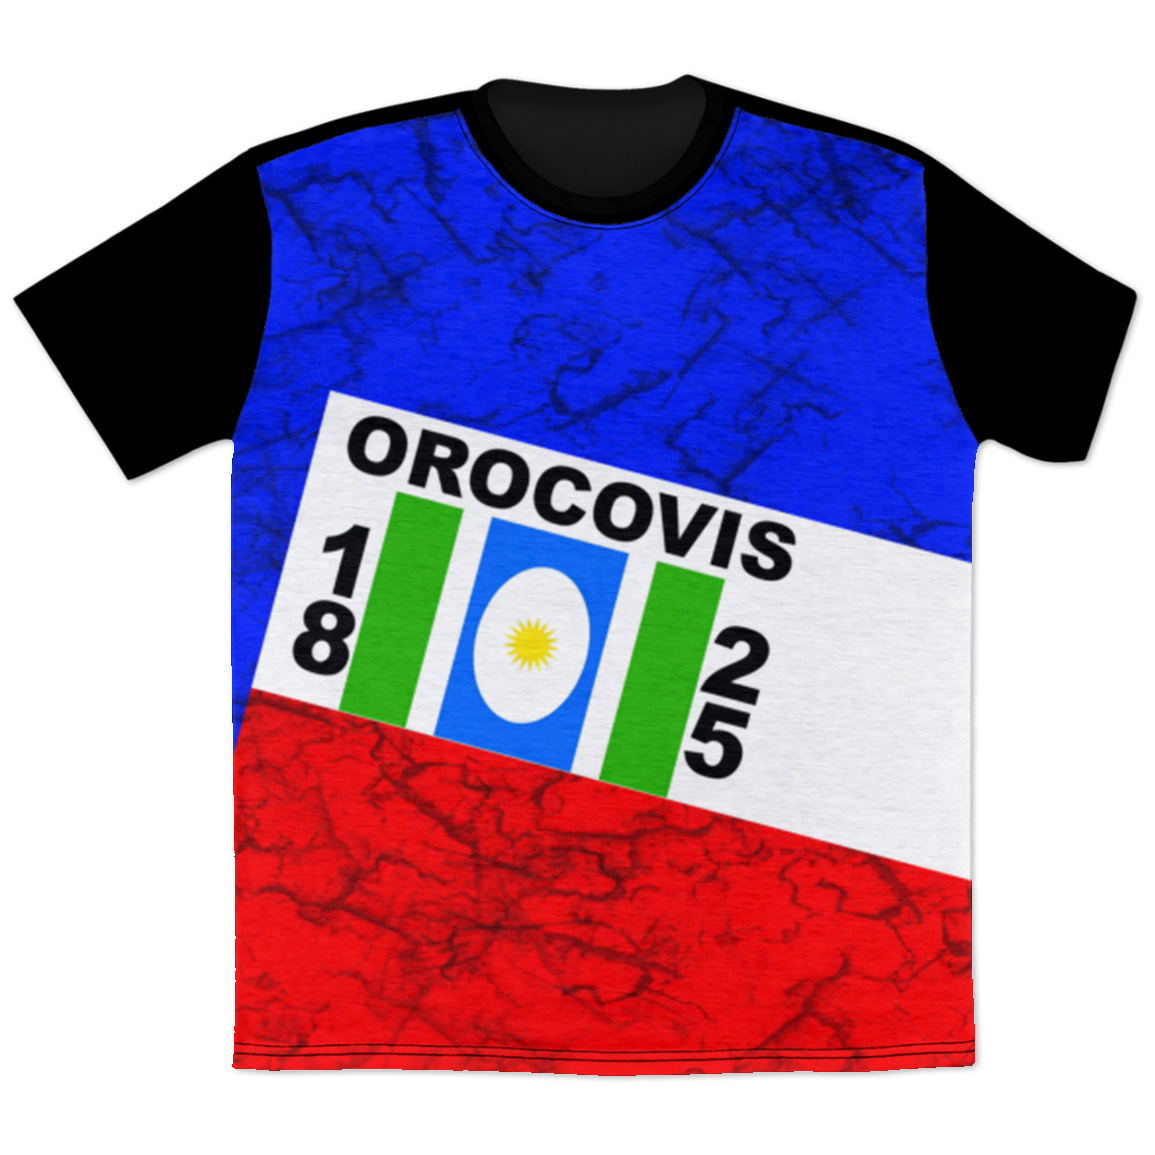 Orocovis T-Shirt - Puerto Rican Pride